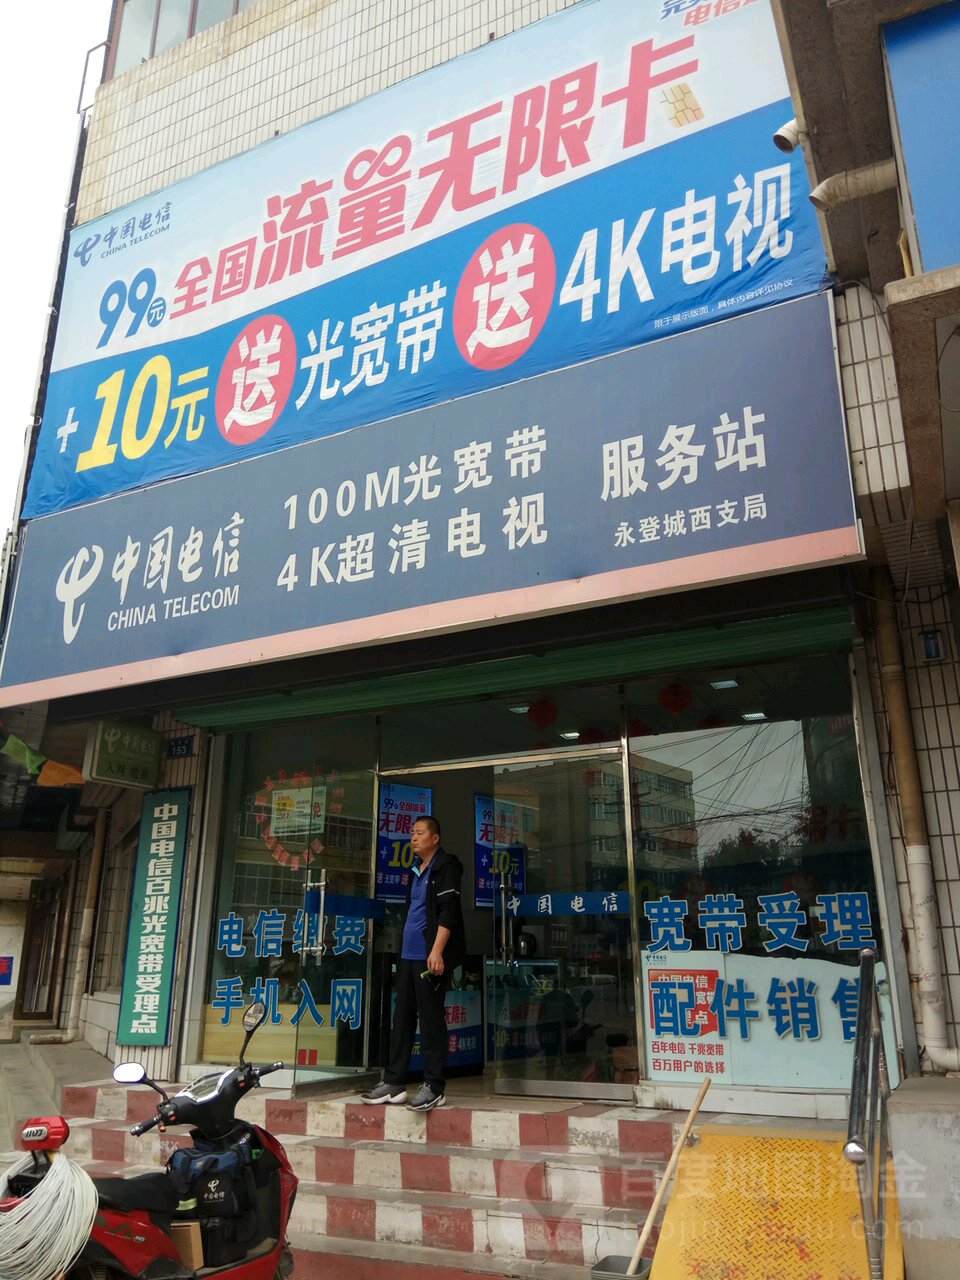 中國電信100M光寬帶4K超清電視服務站